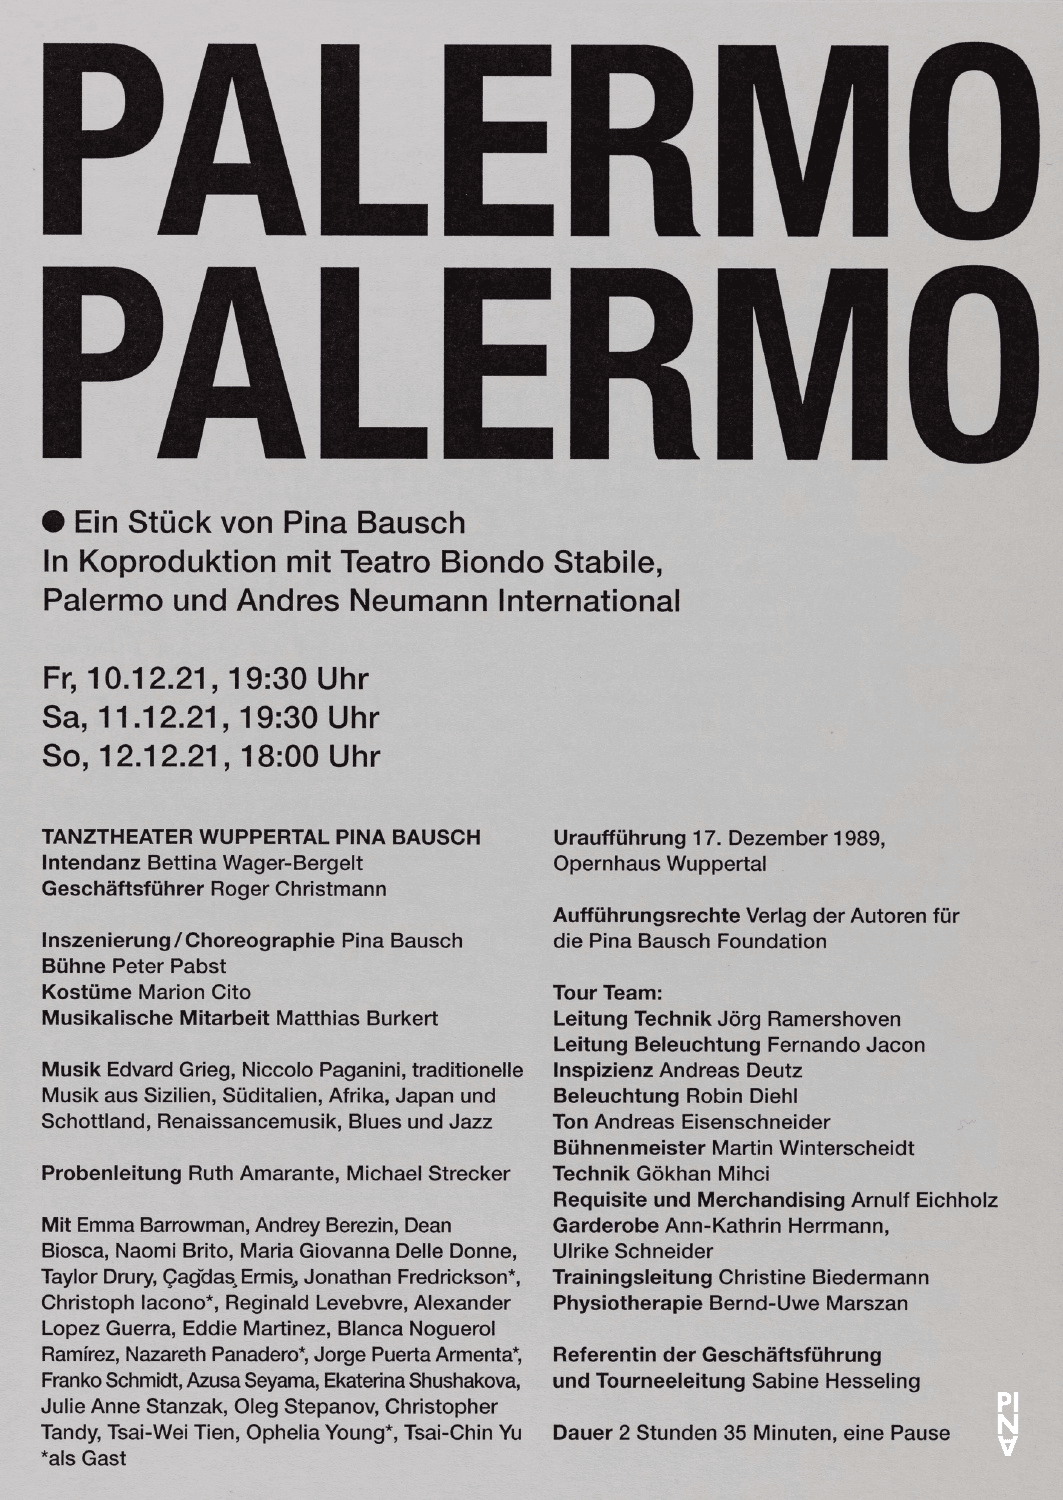 Programmheft zu „Palermo Palermo“ von Pina Bausch mit Tanztheater Wuppertal in Ludwigshafen, 10.12.2021–12.12.2021